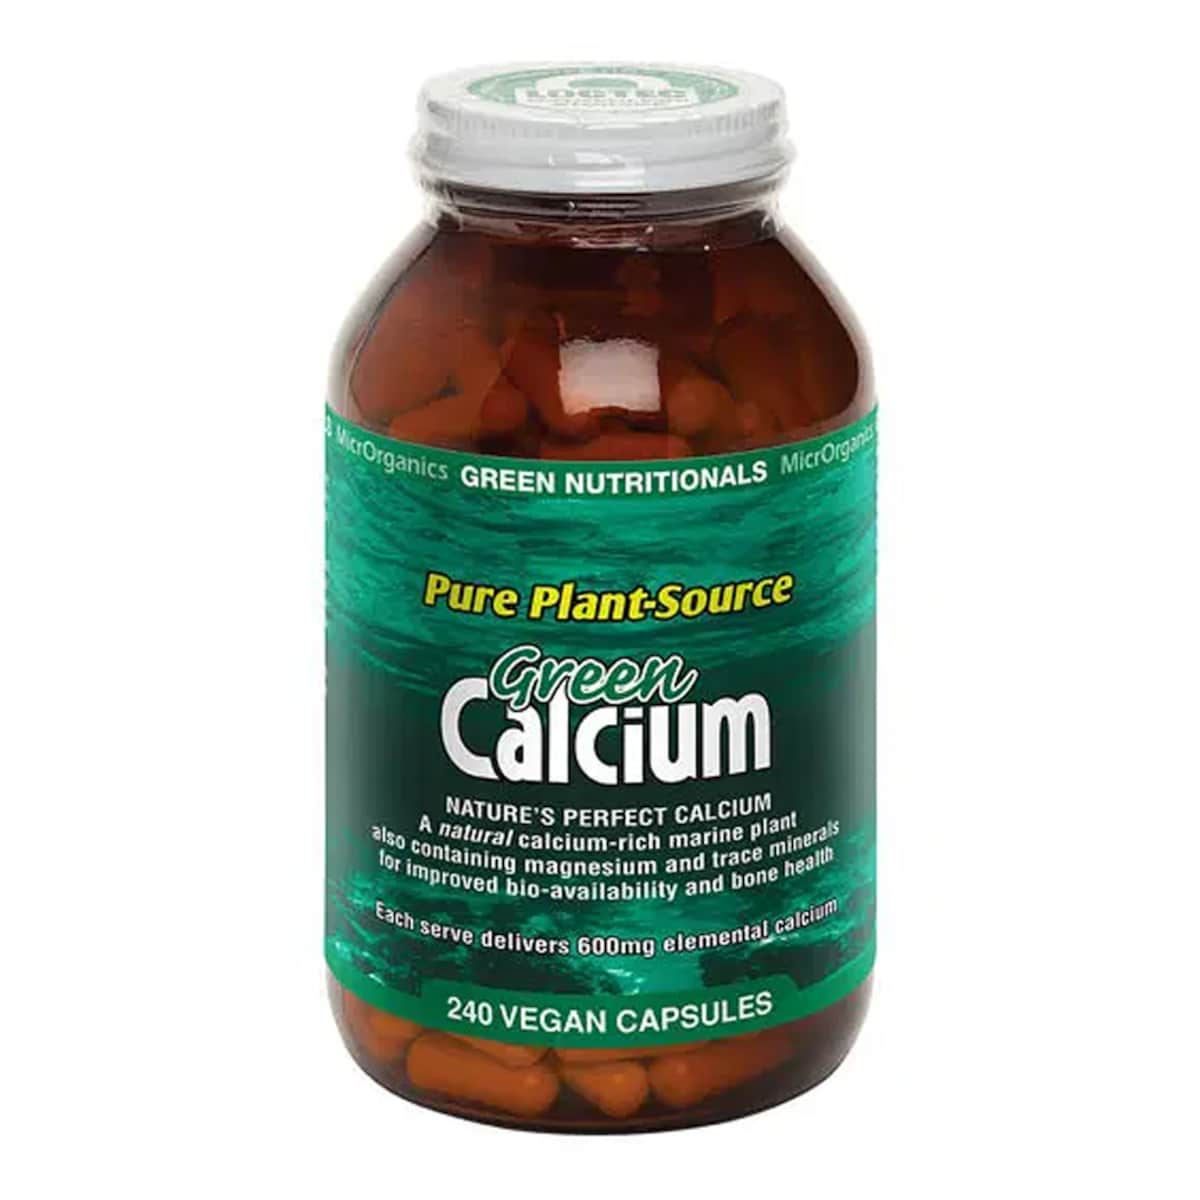 Green Nutritionals Green Calcium 240 capsules